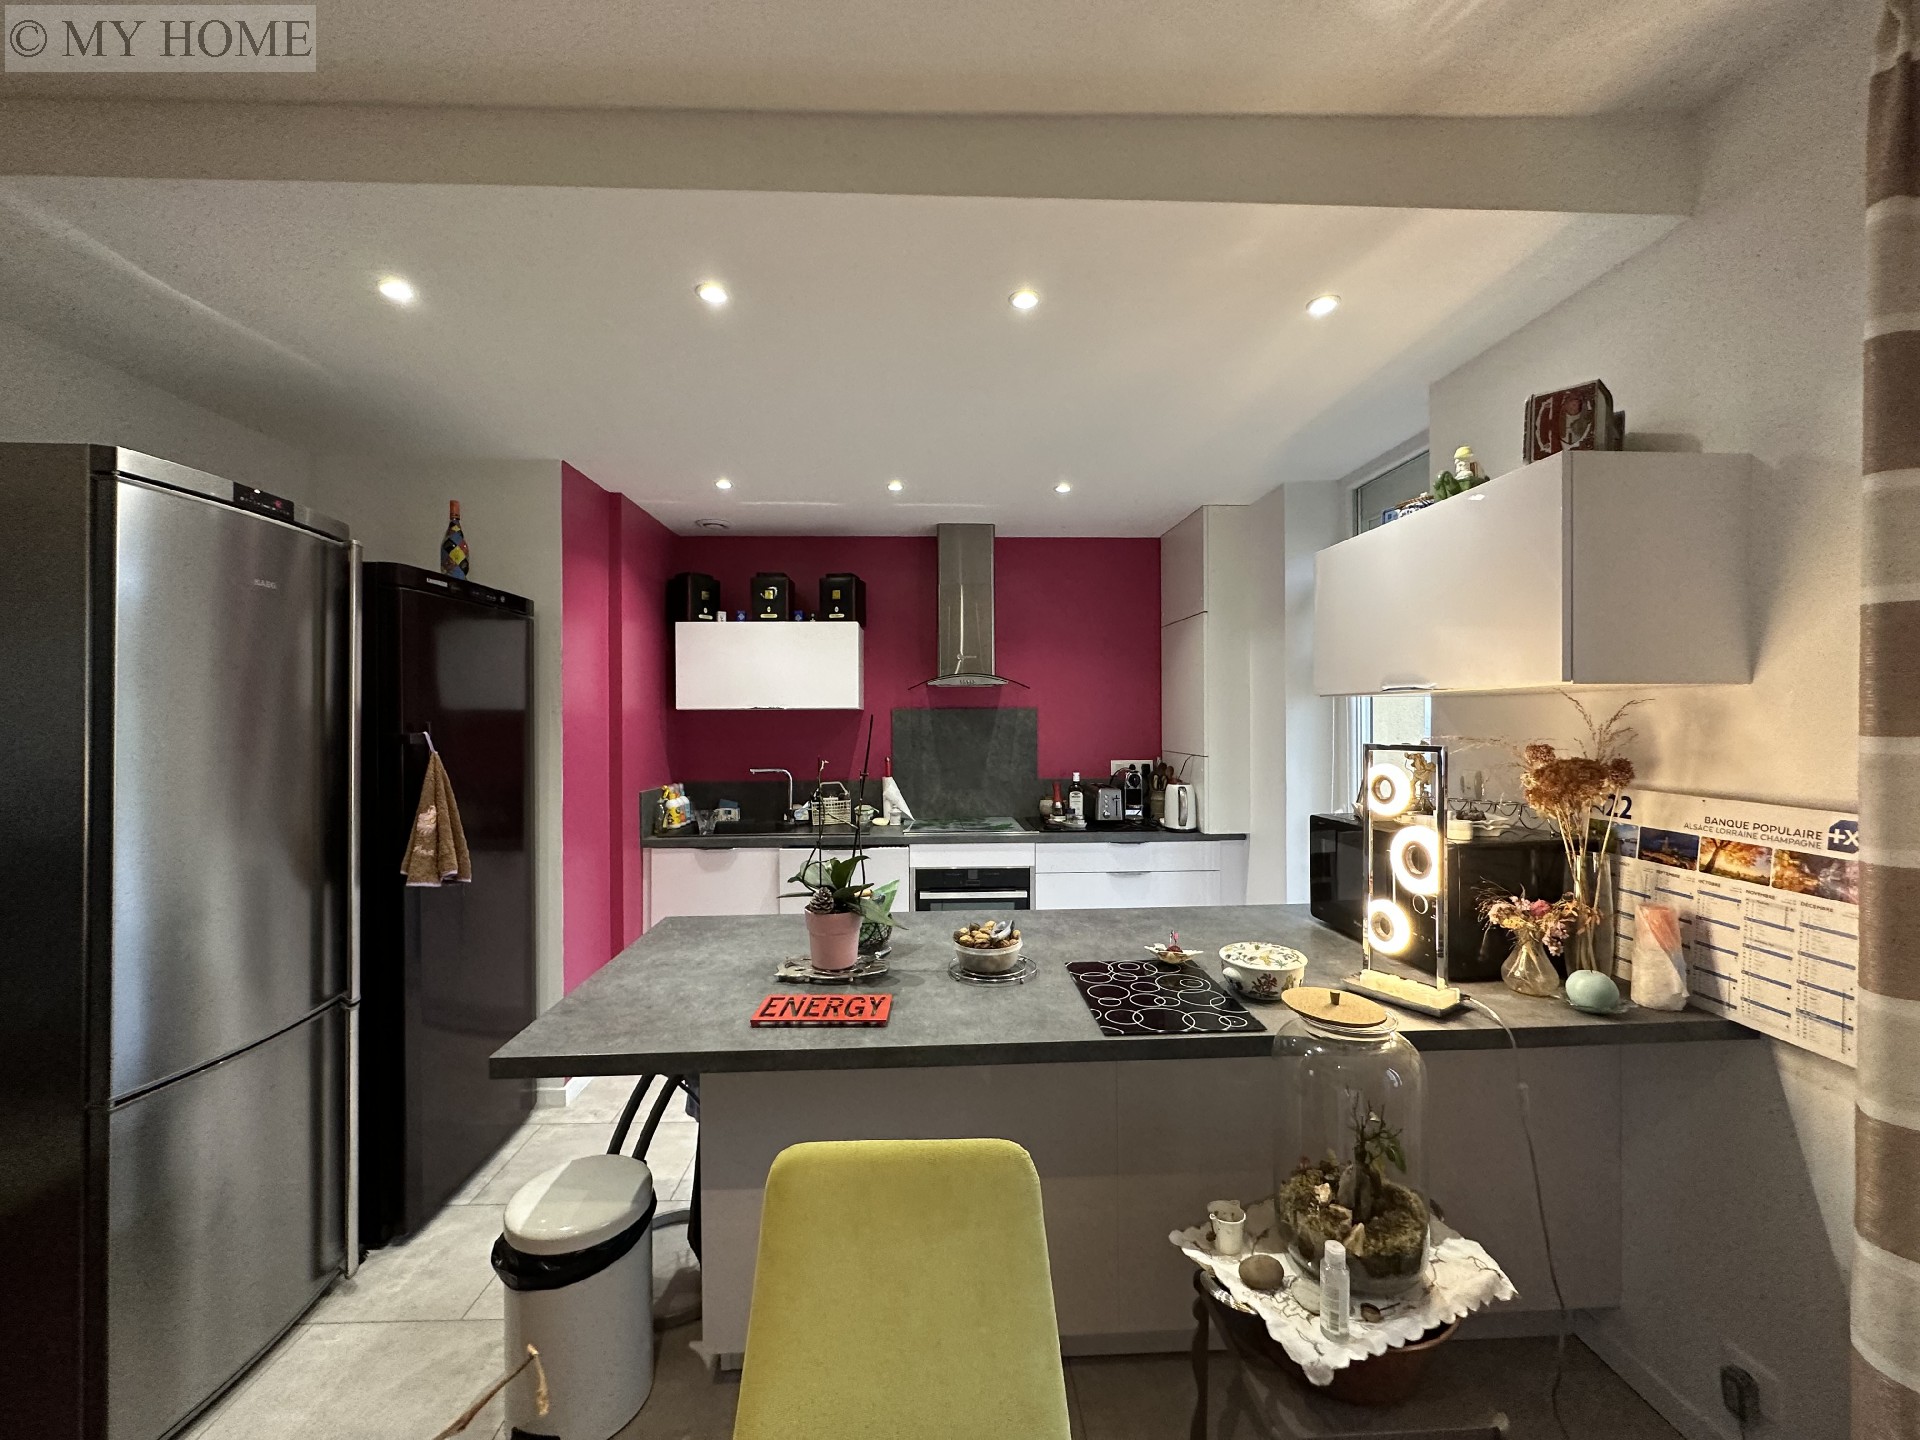 Vente appartement - TOUL 93 m², 5 pièces